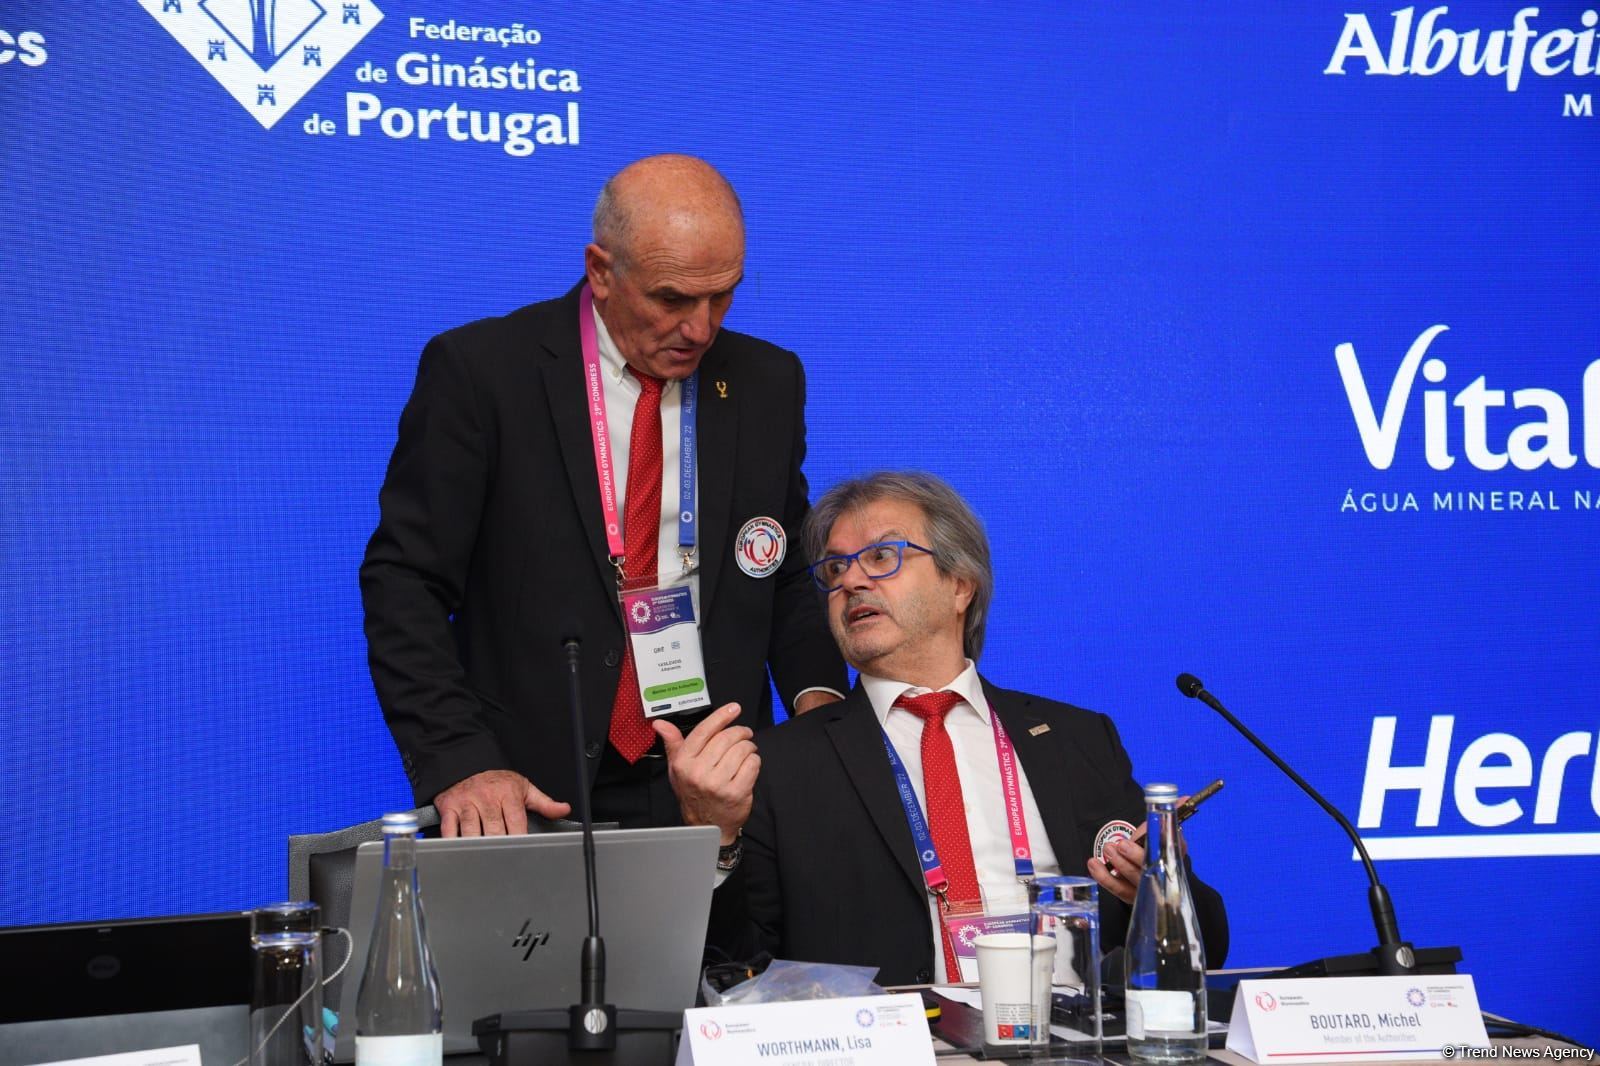 Фарид Гаибов переизбран президентом Европейской гимнастики (ФОТО)